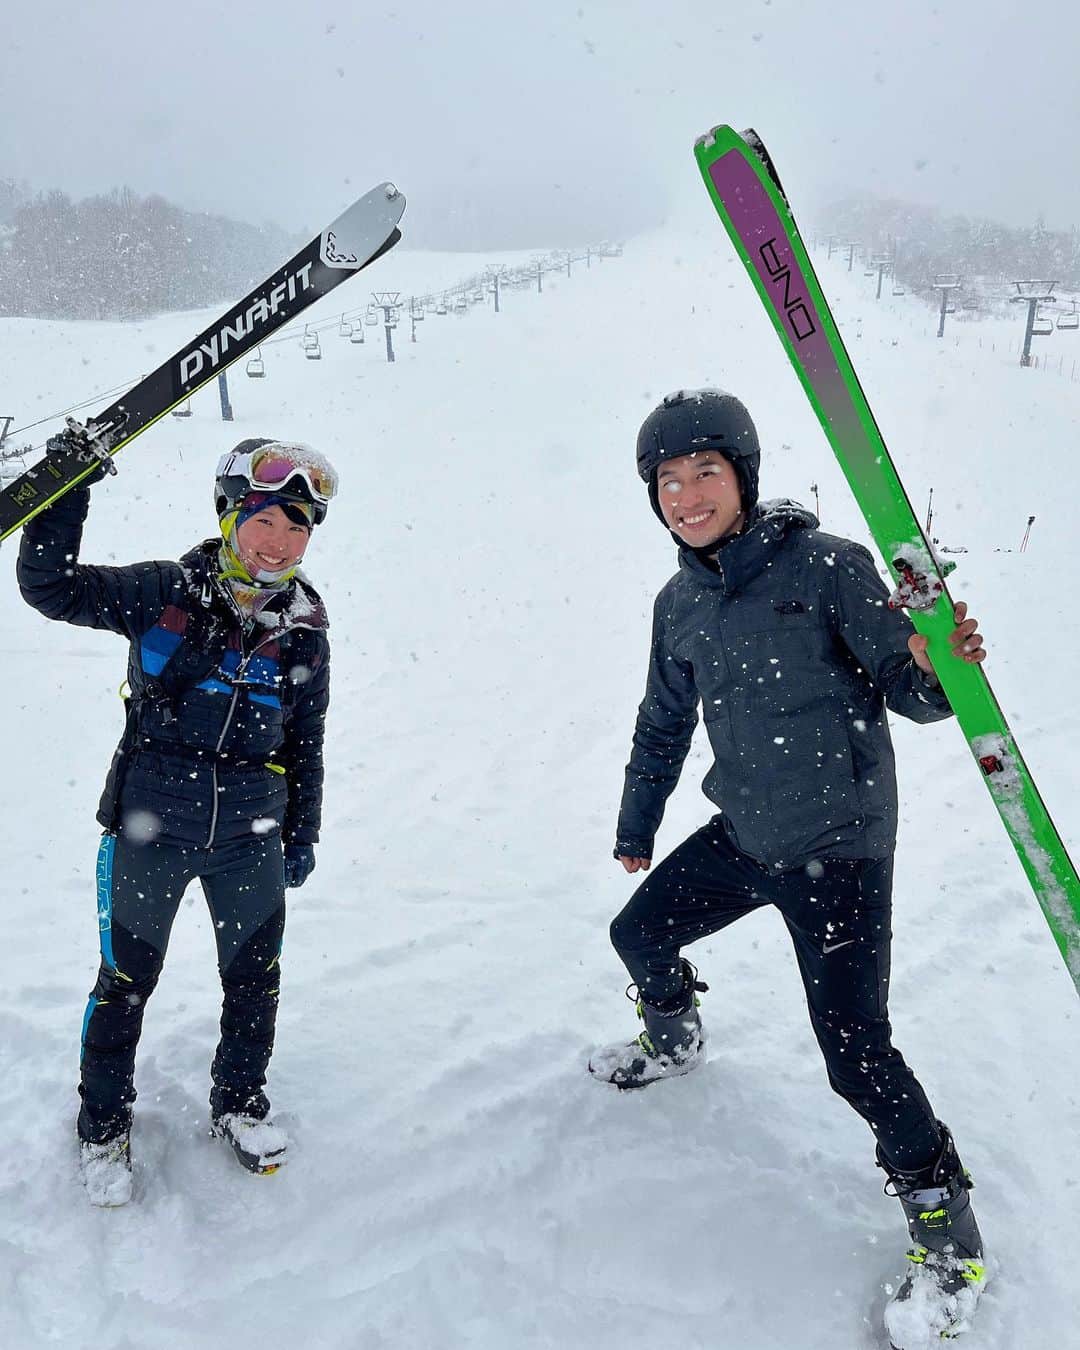 重盛赳男のインスタグラム：「NBSみんなの信州⛷  あすの特集では、山岳スキー「スキーモ」をご紹介！  スキーモは、2026年のミラノ・コルティナダンペッツォ冬季オリンピックの追加種目に採用された、注目の競技。 山岳県・信州でも、熱量が高まりつつあります！  注目の若手選手としてご紹介するのが、飯山高校3年生の小林華蓮選手。 去年夏にスカイランニングでの偉業をお伝えし、「五刀流」ともご紹介しましたが、今回はスキーモ！ 来週始まる世界選手権にも日本代表として出場します👏  「NBSみんなの信州」 2月22日（水）夕方6時9分〜 ご覧ください！  #長野放送 #NBSみんなの信州 #みんなの信州 #山岳スキー #スキーモ #skimo #skimountaineering #小林華蓮 選手 #重盛赳男 #アナウンサー」